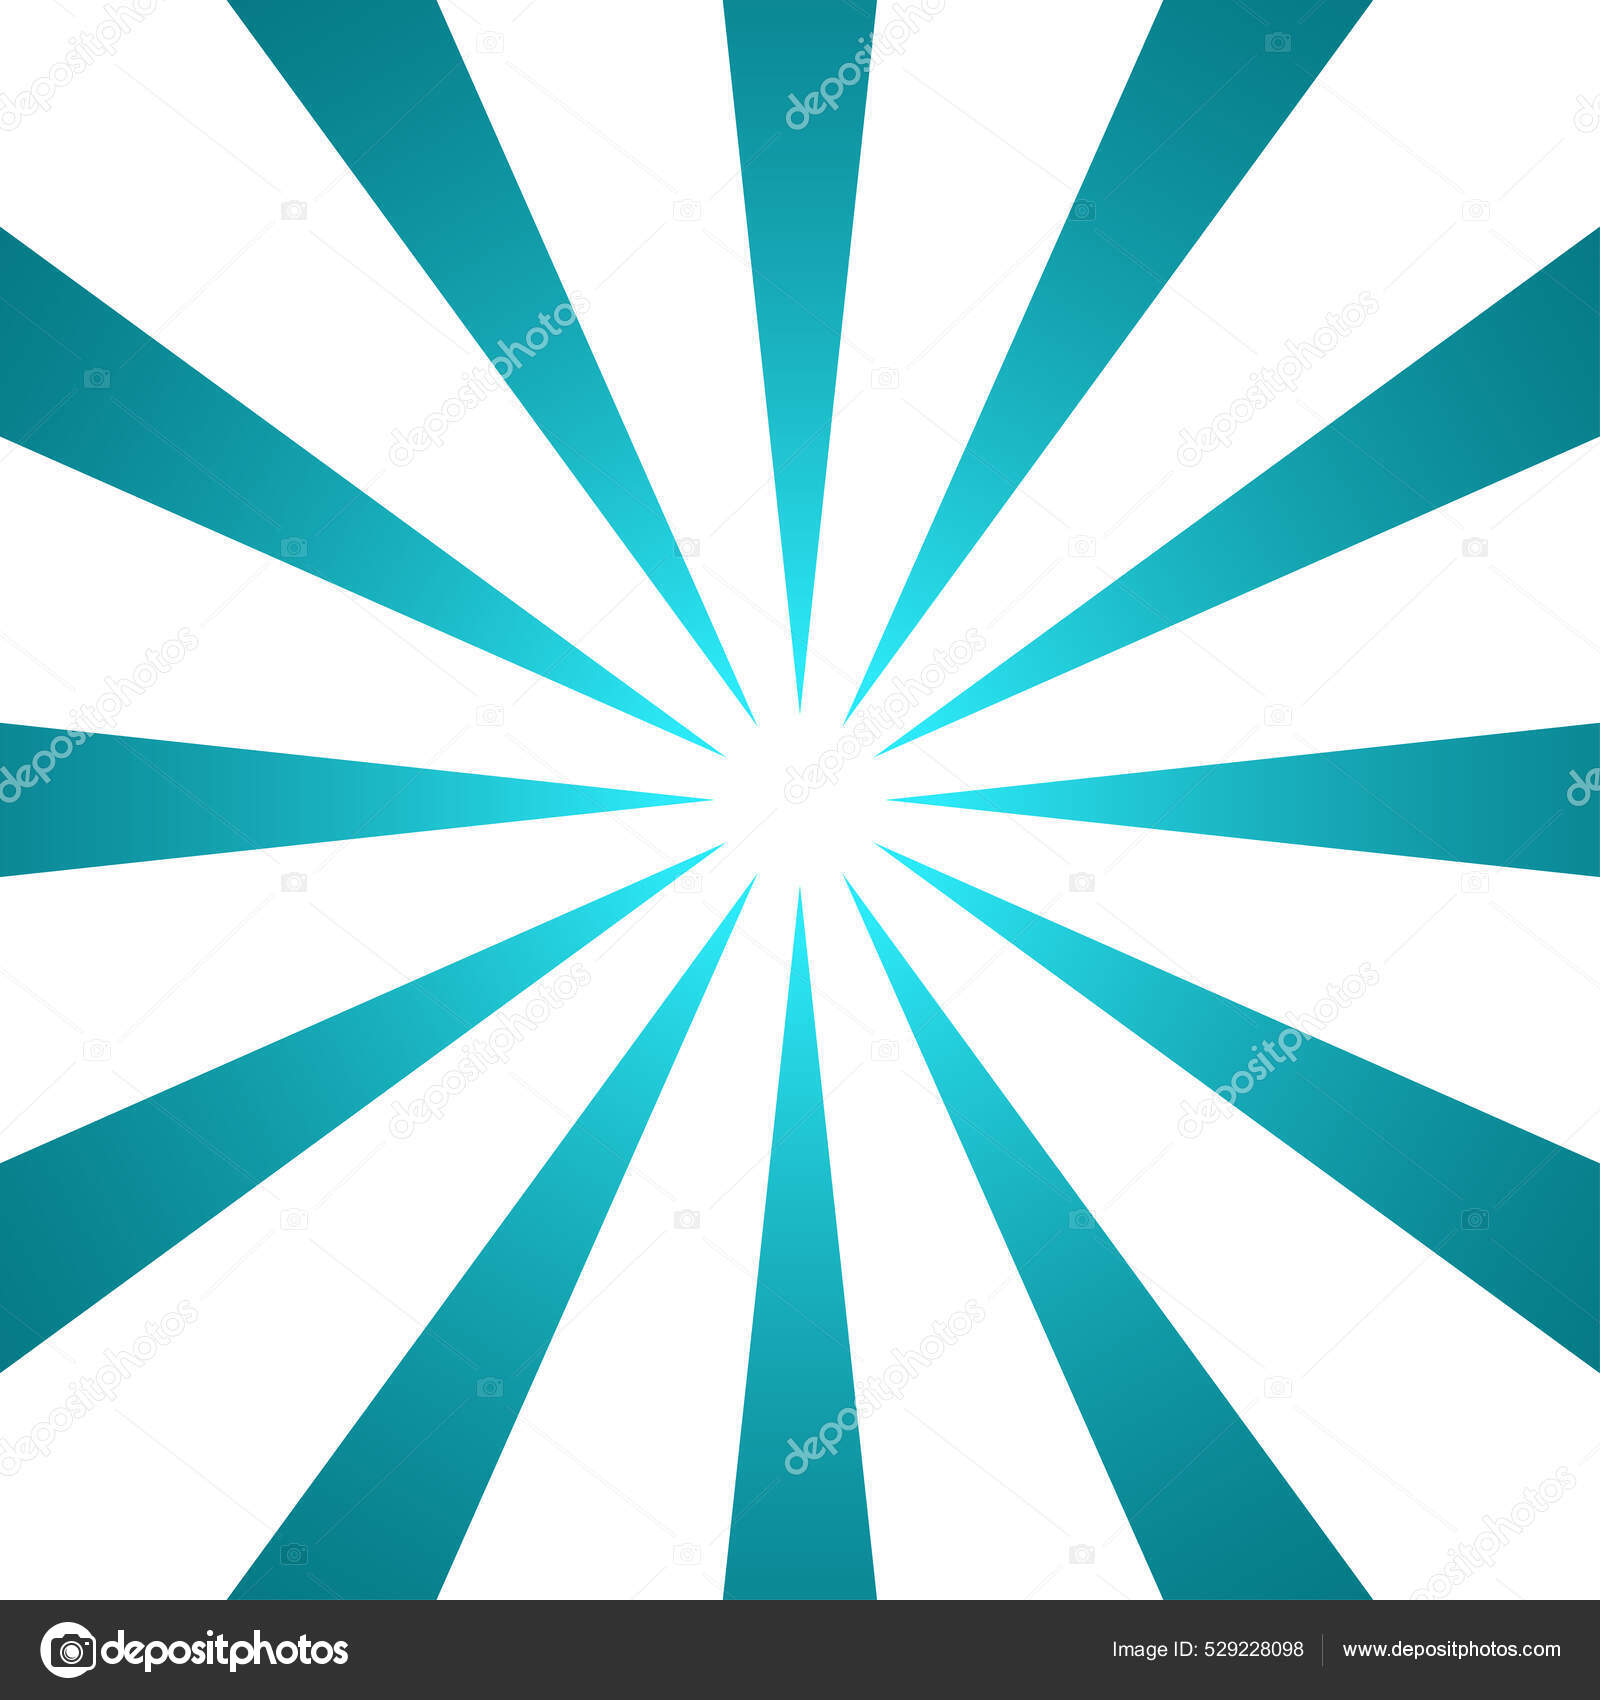 Download Green Striped Sunburst GFX Background